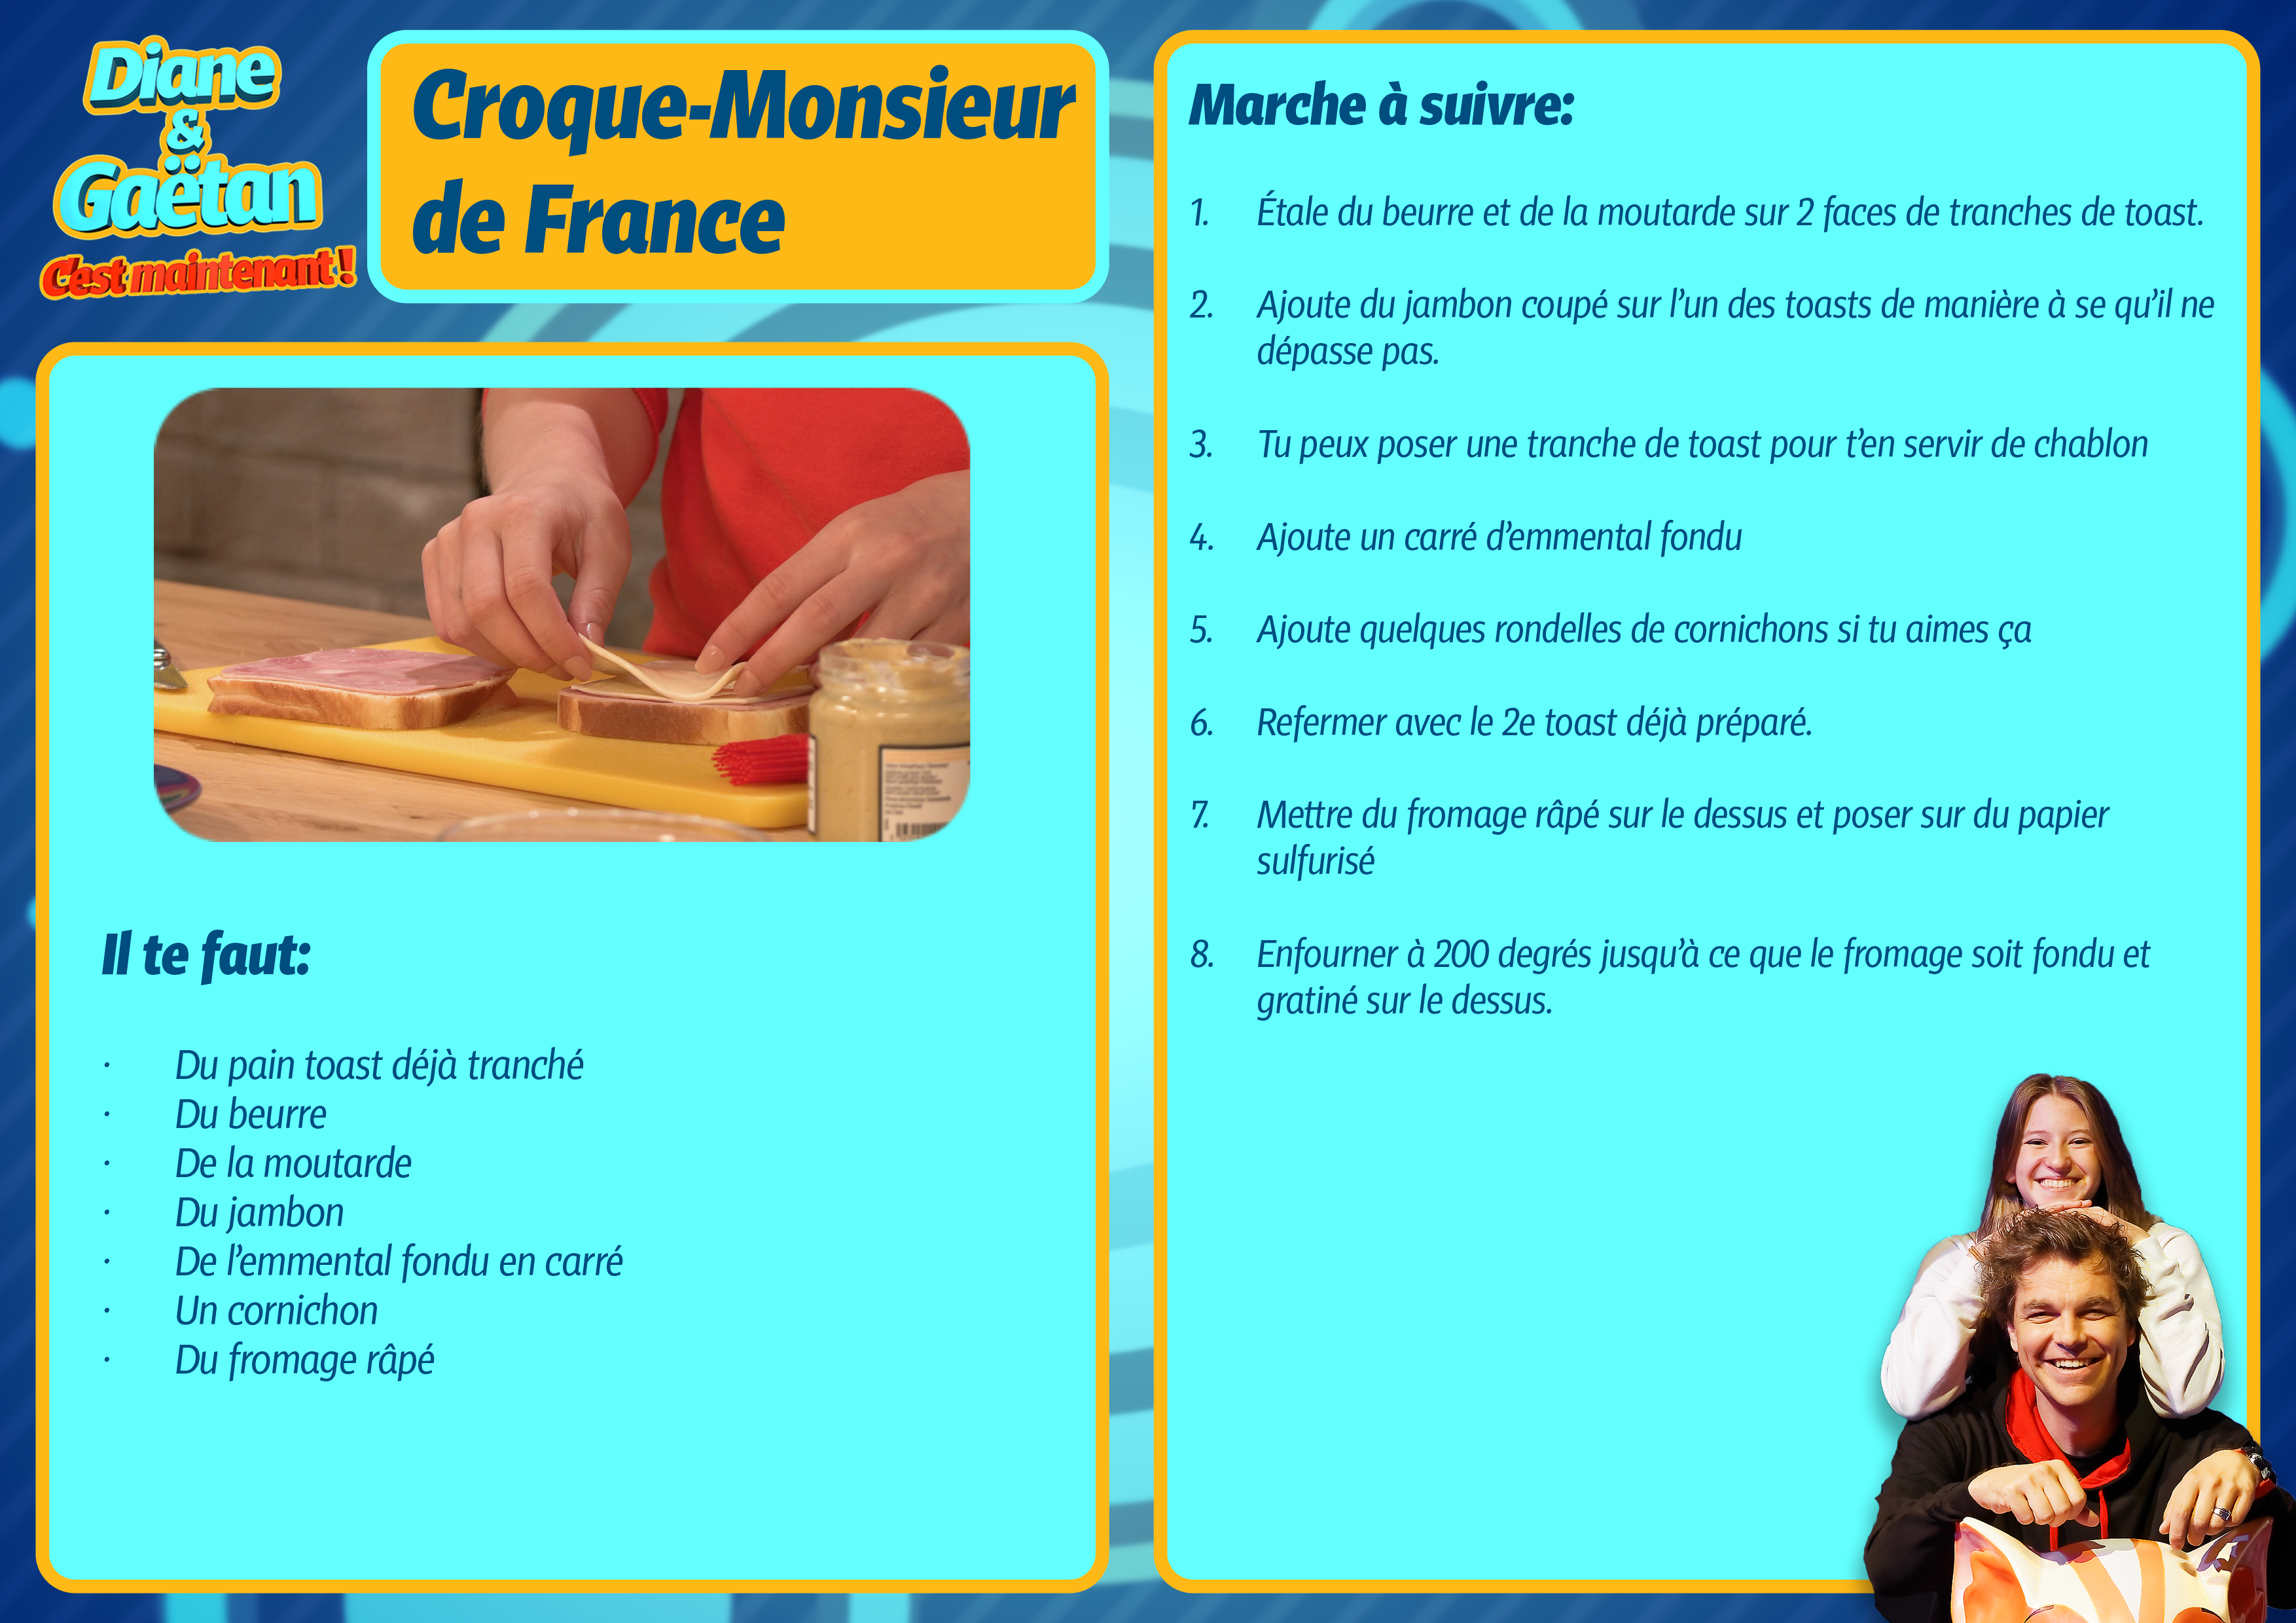 Le Croque-Monsieur de France [RTS]